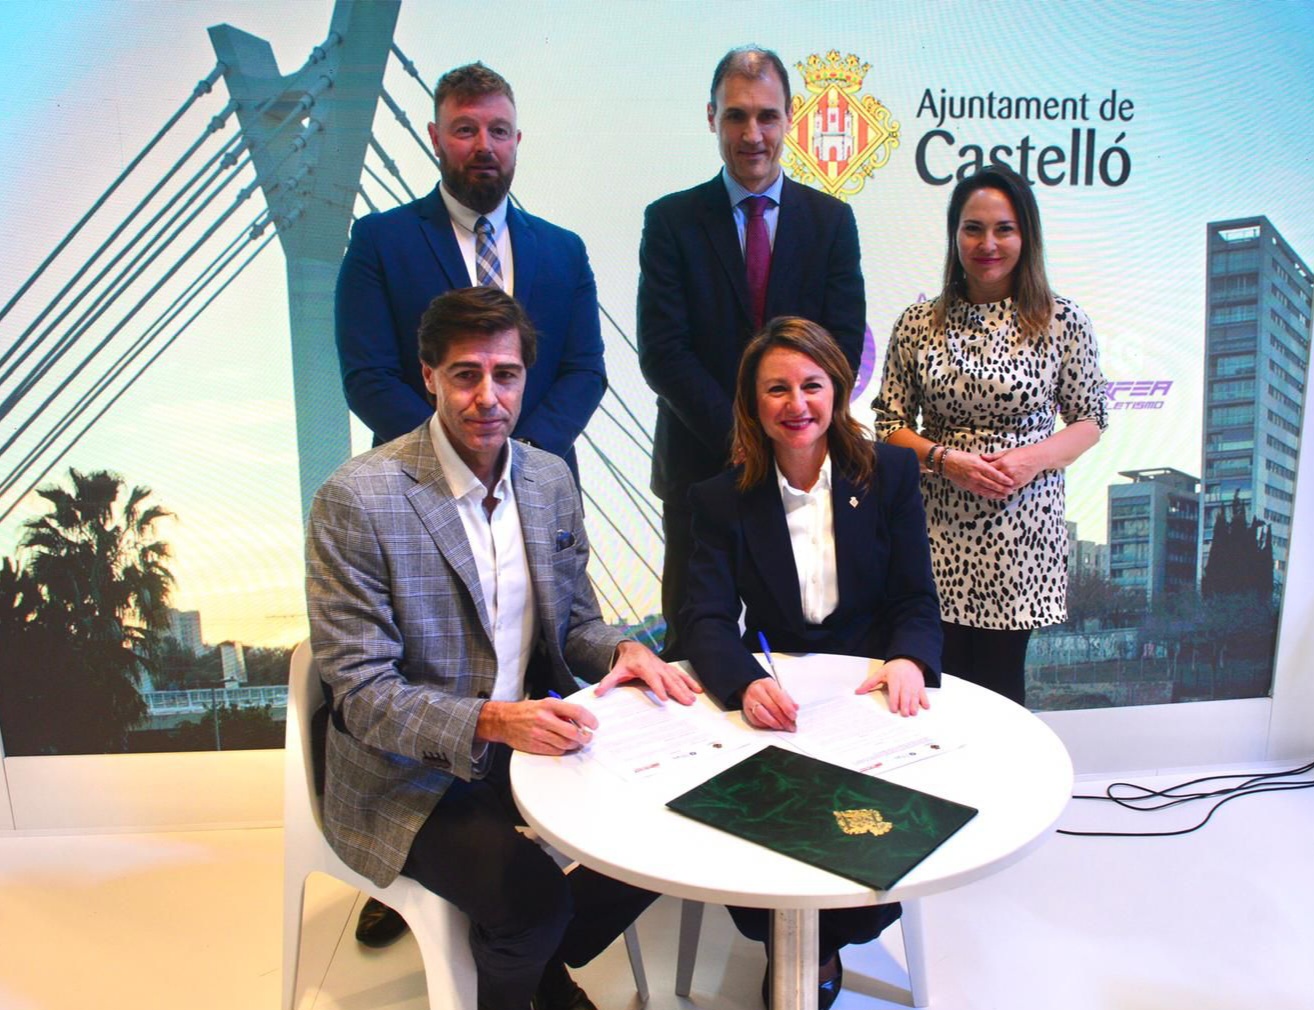 La Real Federación Española de Atletismo y los Ayuntamientos de Almería, Castelló y la Diputación de Palencia firman la declaración de intenciones para obtener la certificación Active Running Cities.